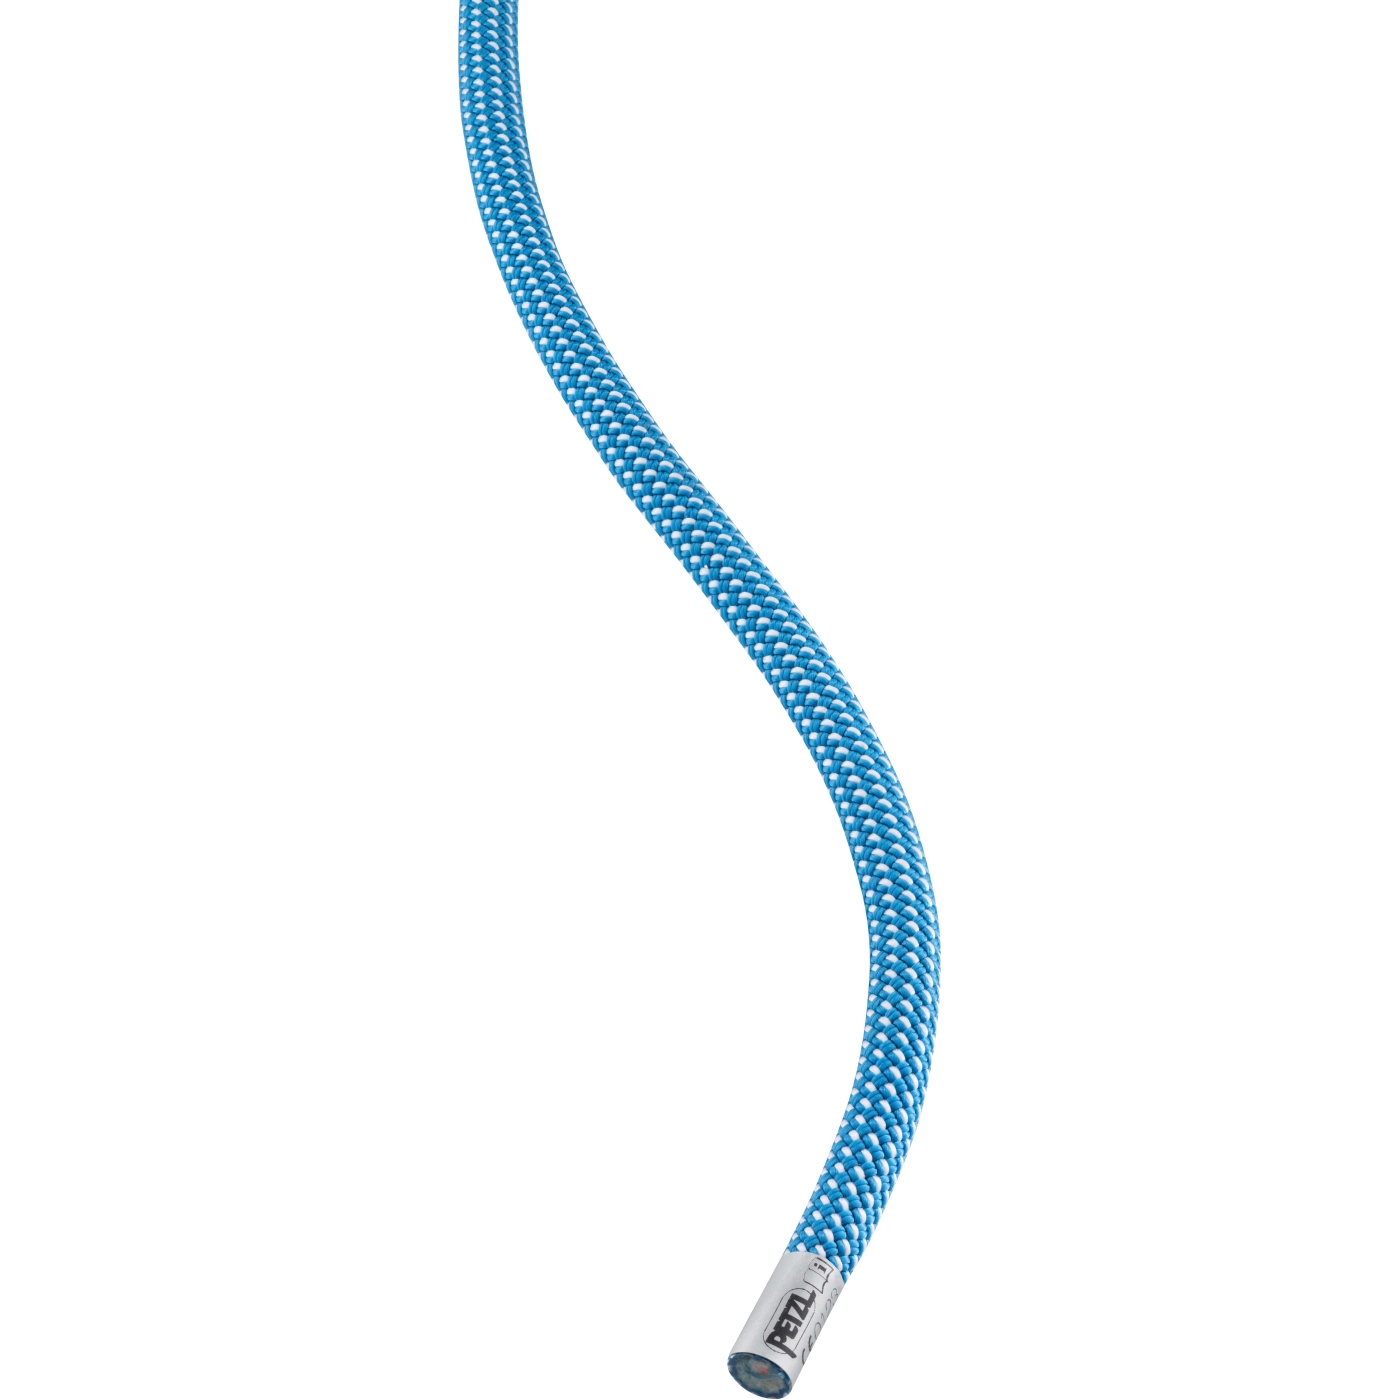 Produktbild von Petzl Arial 9.5mm Seil - 70m - blau